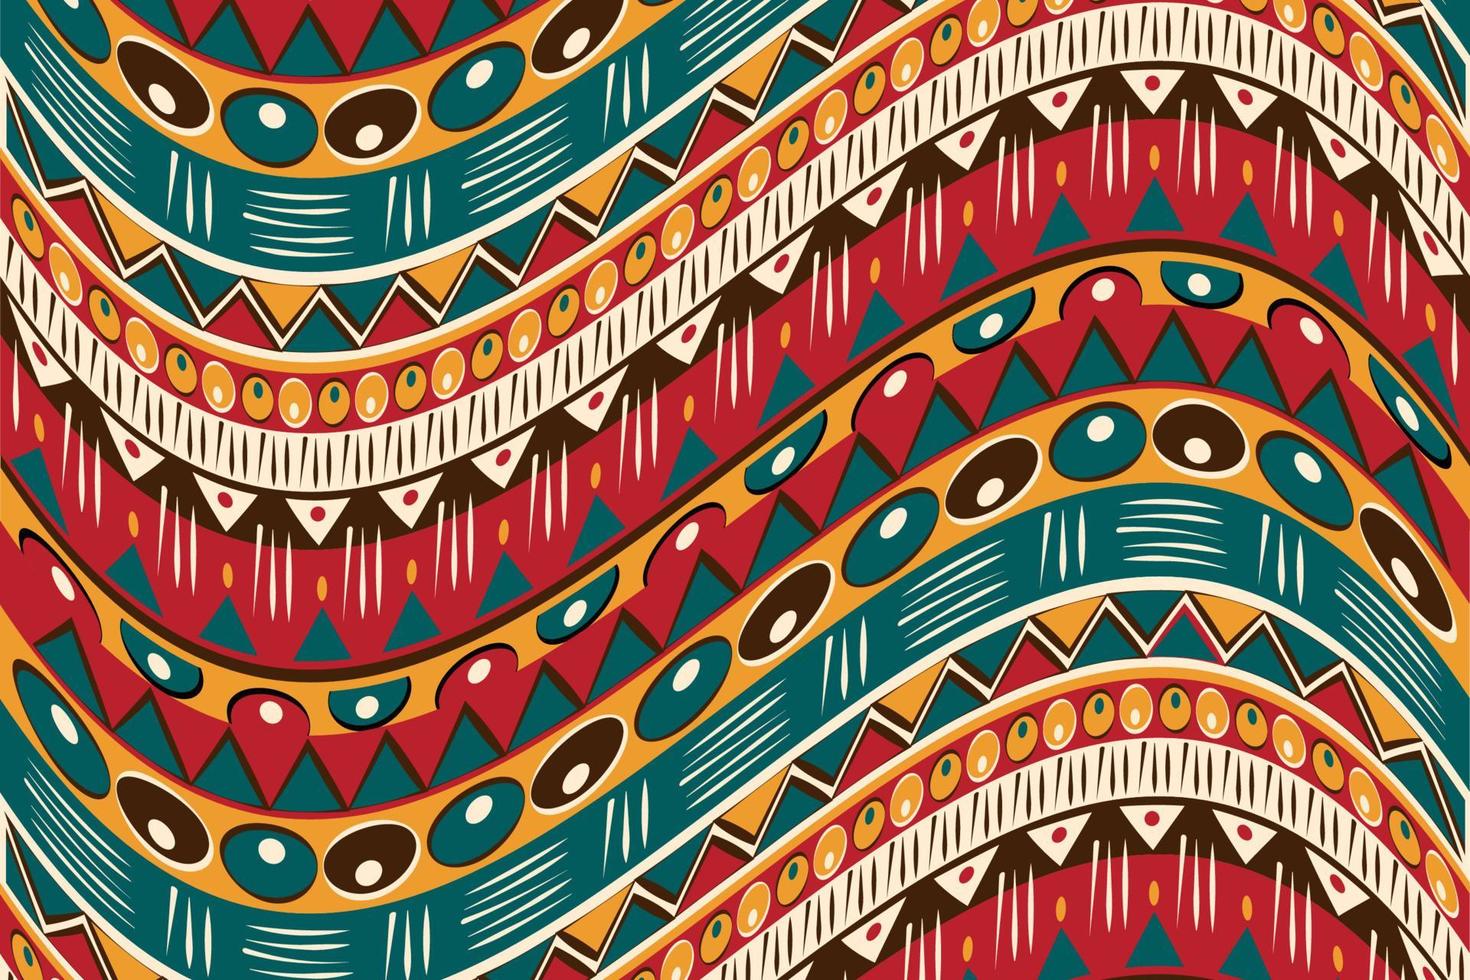 Vải in họa tiết bản địa Châu Phi, hình trang trí bản địa bằng vải ghép vải là một sản phẩm độc đáo và thú vị. Các họa tiết in Châu Phi đầy màu sắc và tinh tế sẽ mang đến cho bạn không gian sống động và độc đáo.